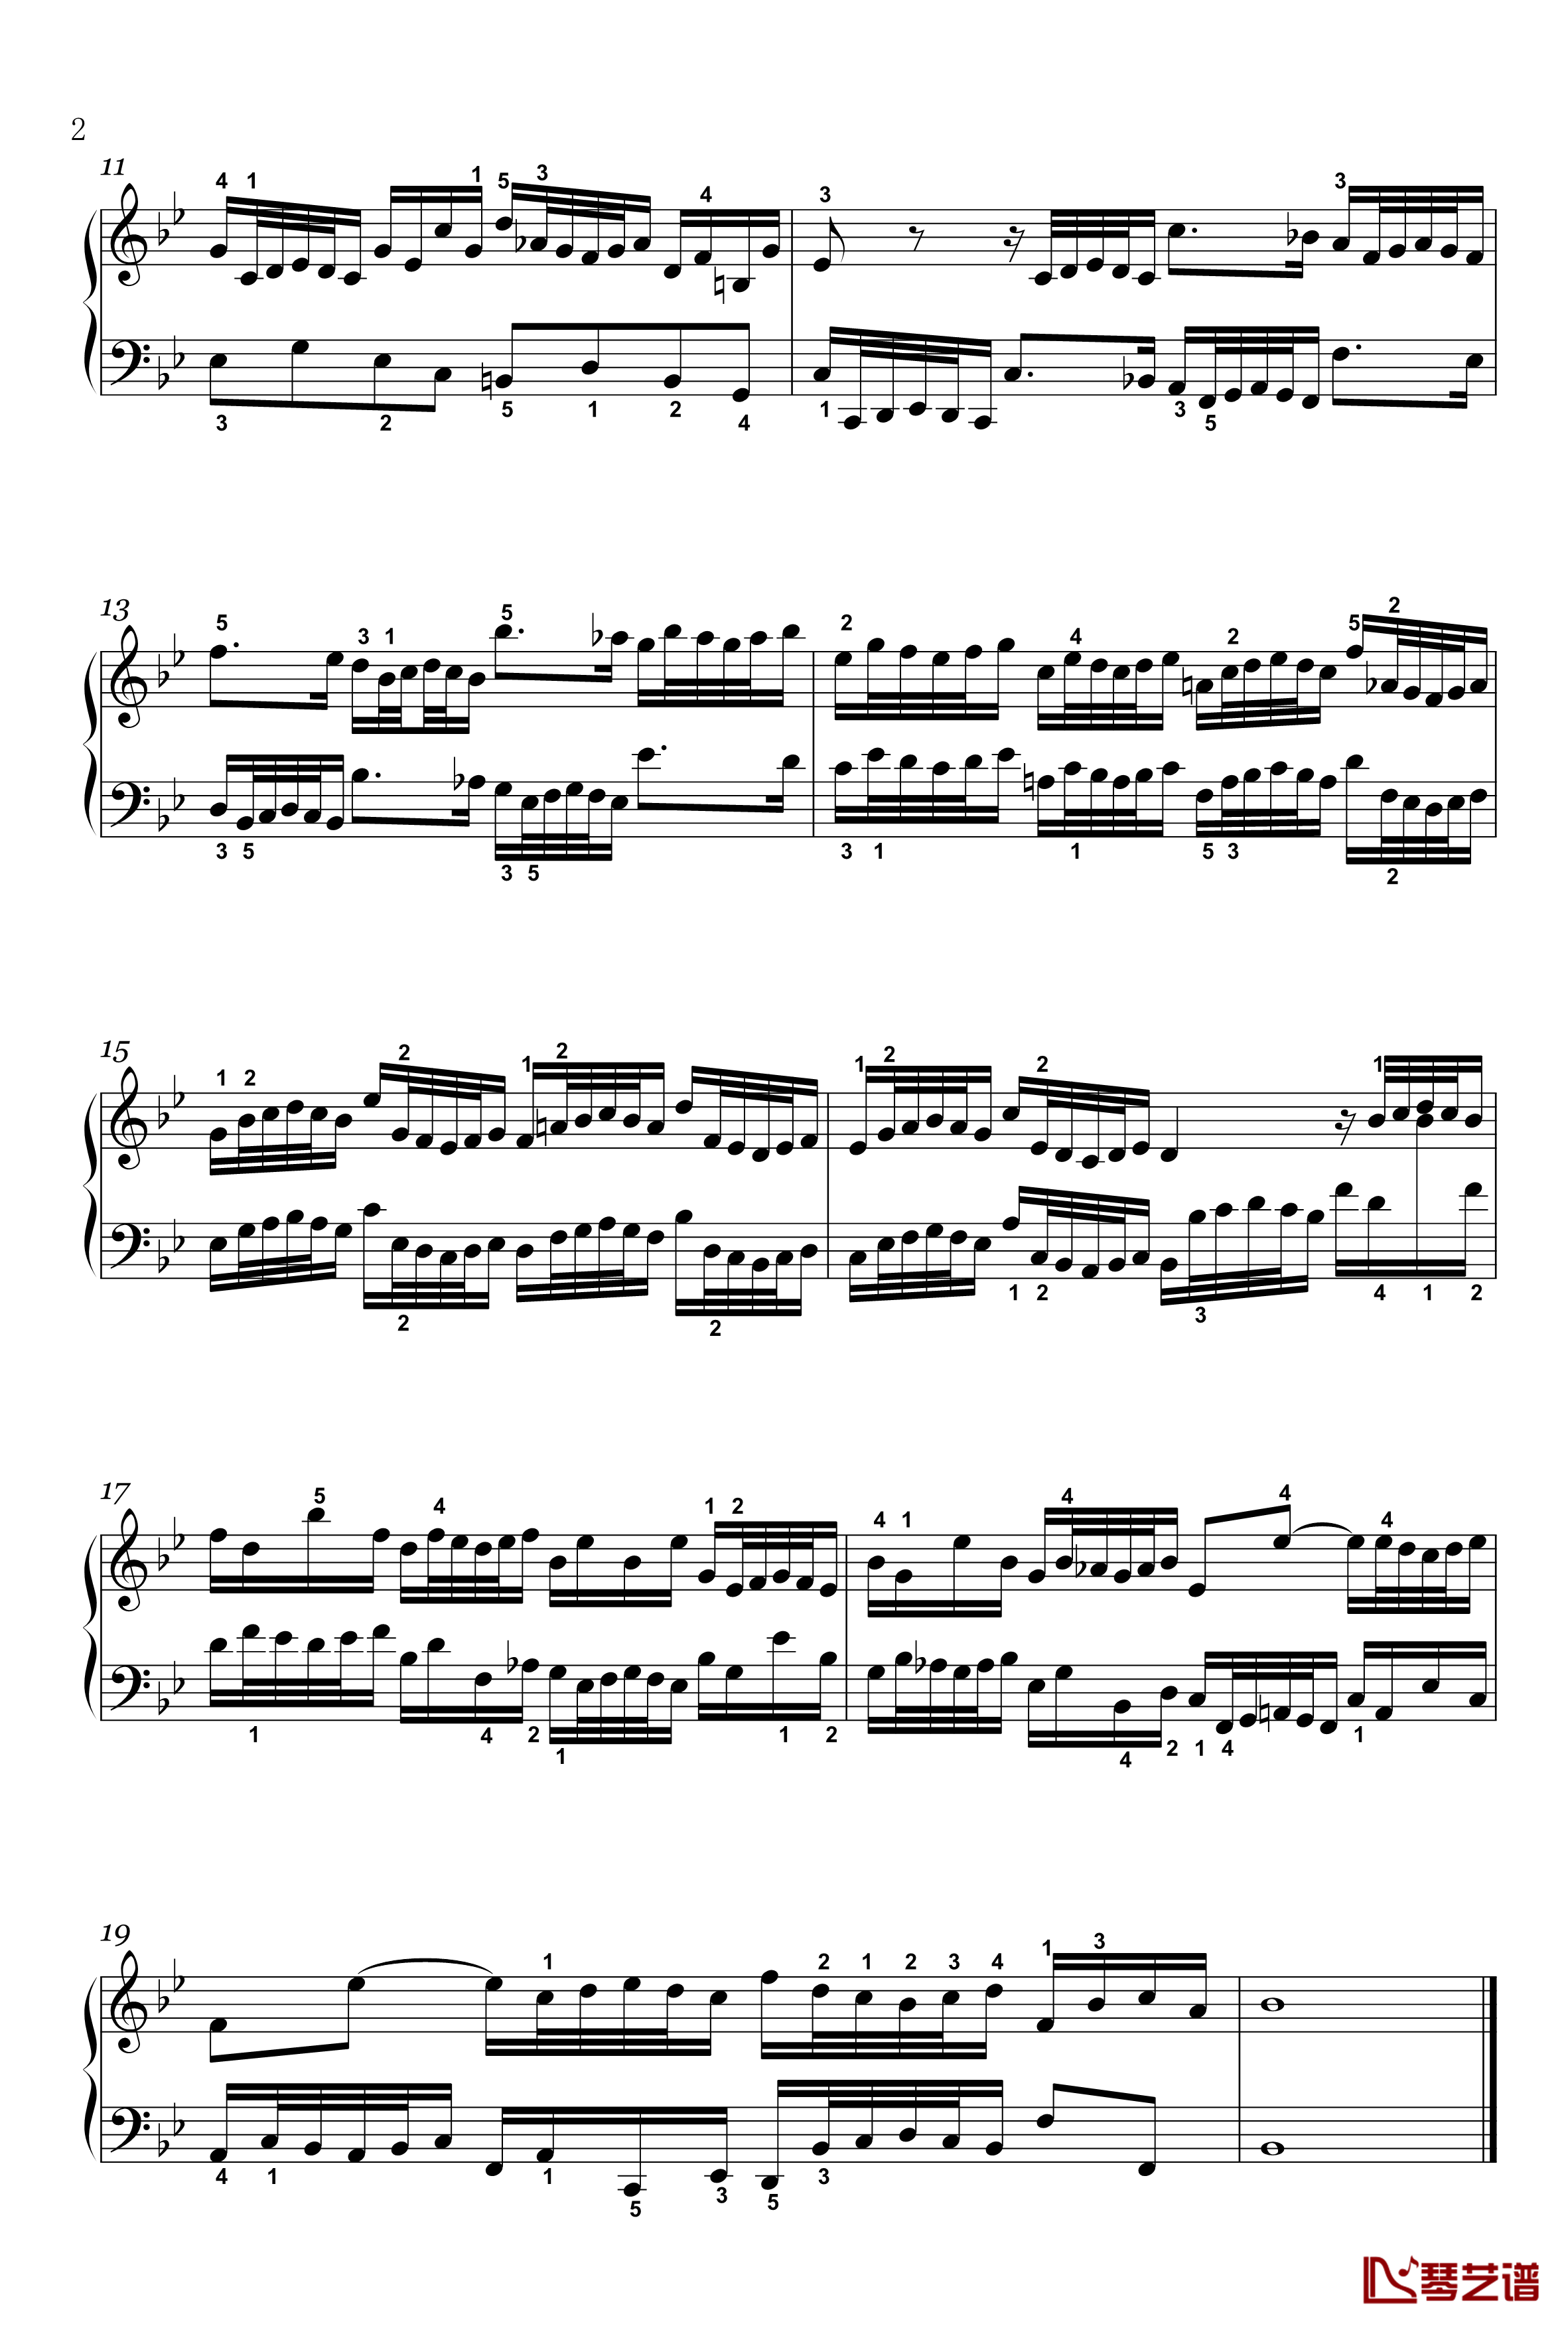 二部创意曲钢琴谱-14-BWV-785-雅克·奥芬巴赫2